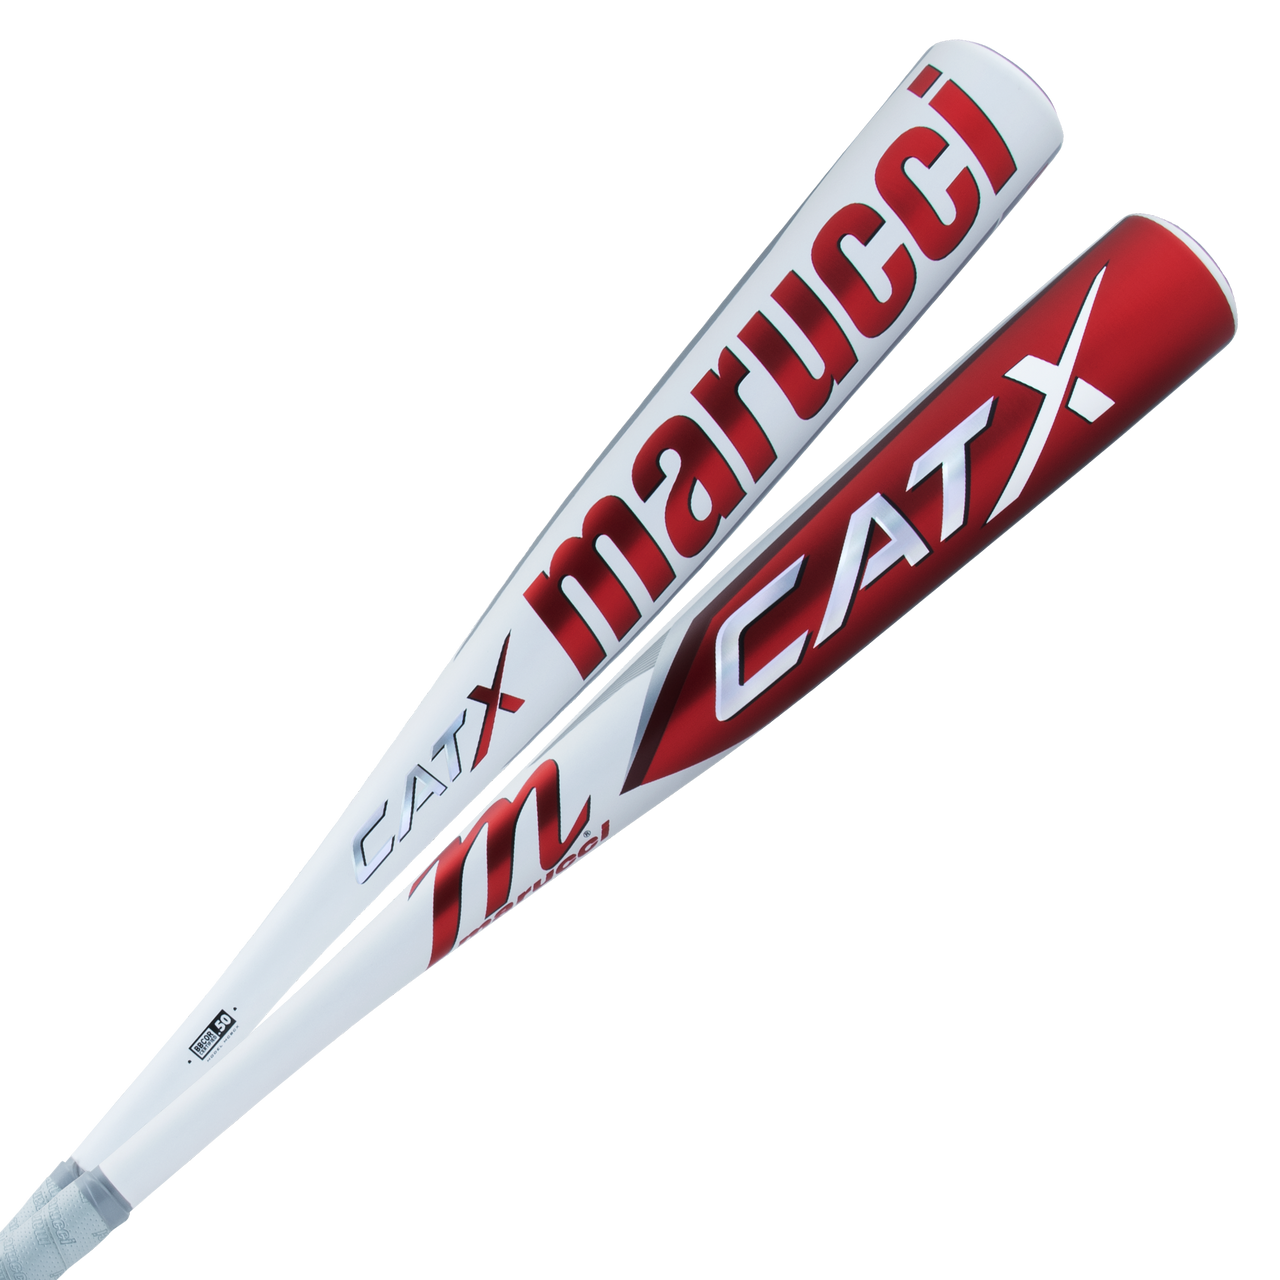 Marucci CATX (-3) BBCOR Baseball Bat: MCBCX